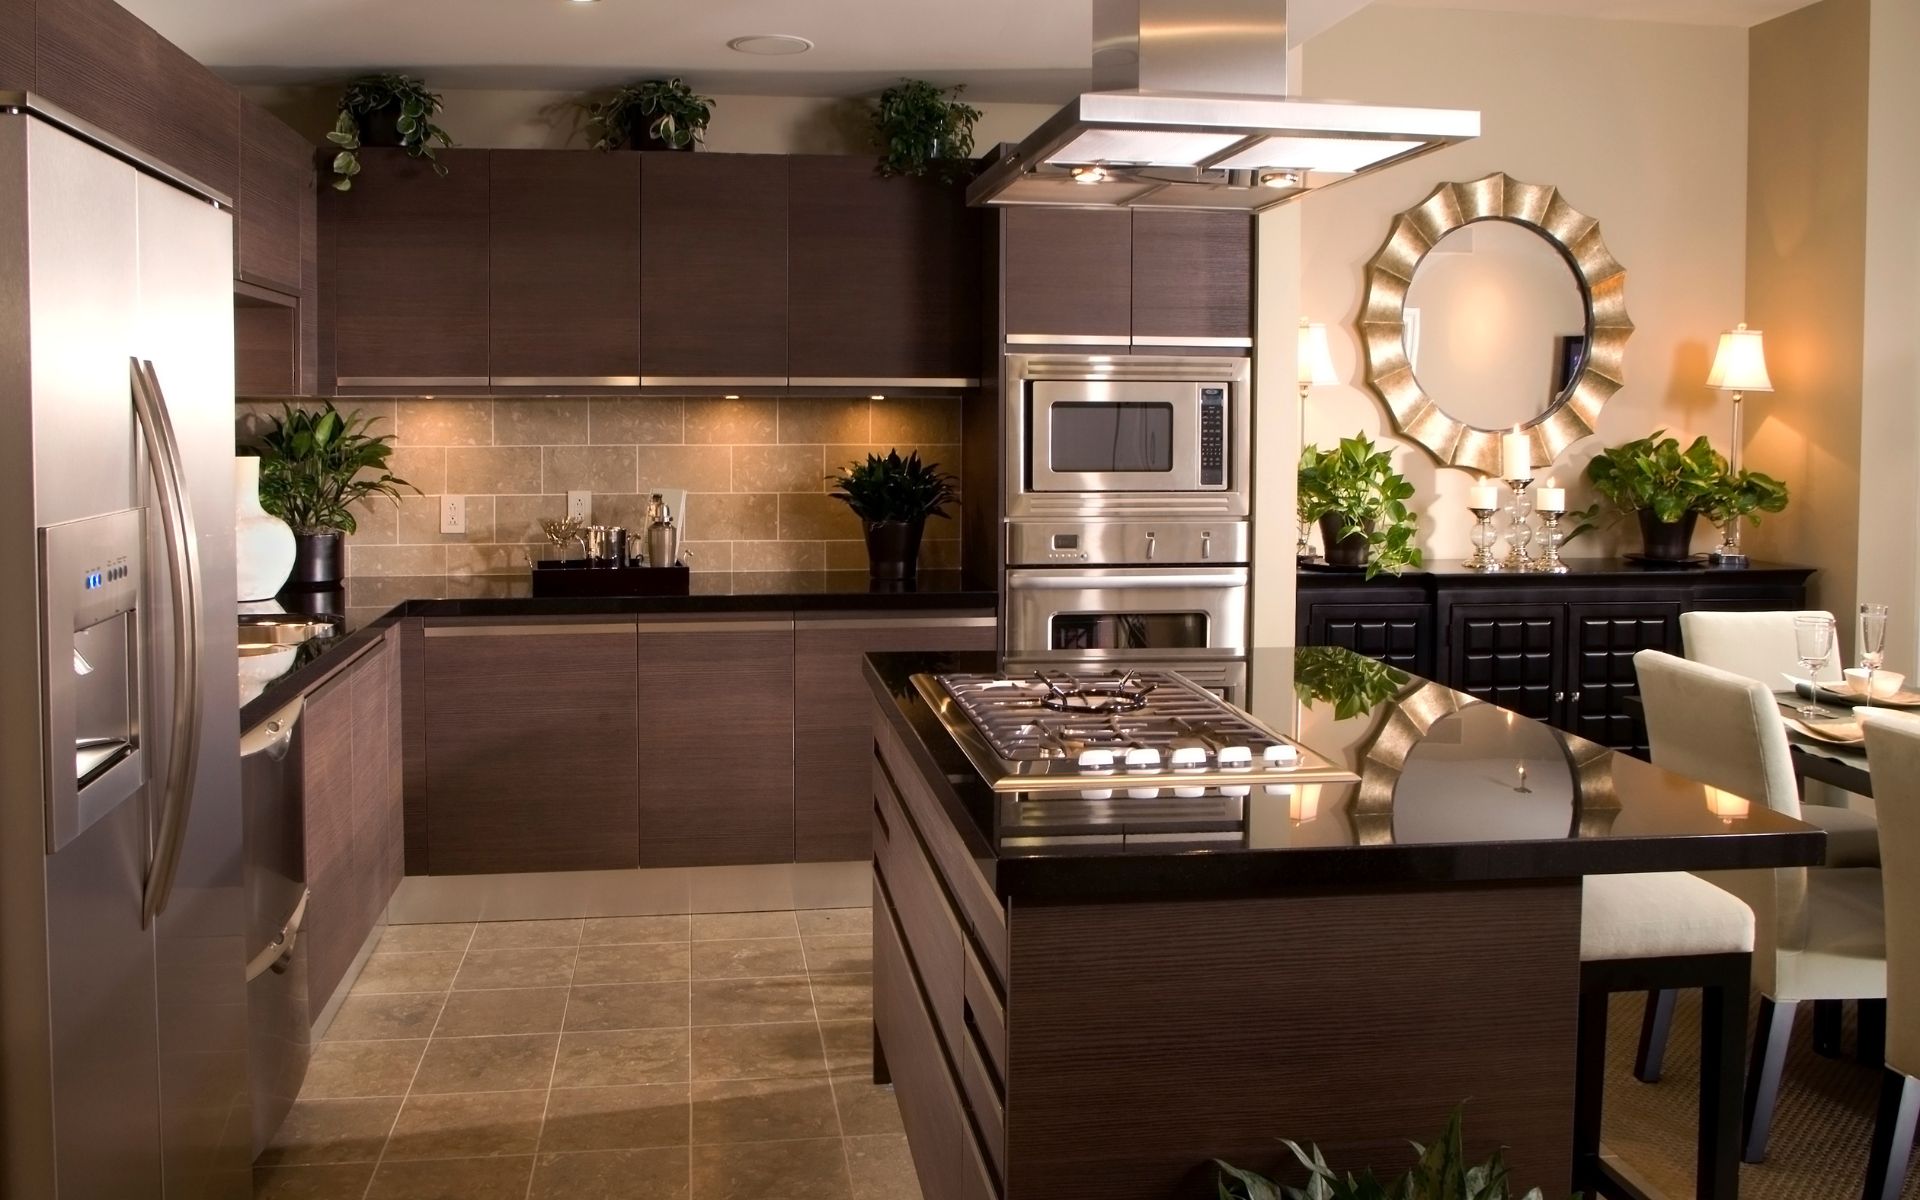 Elegant, dark kitchen with great appliances